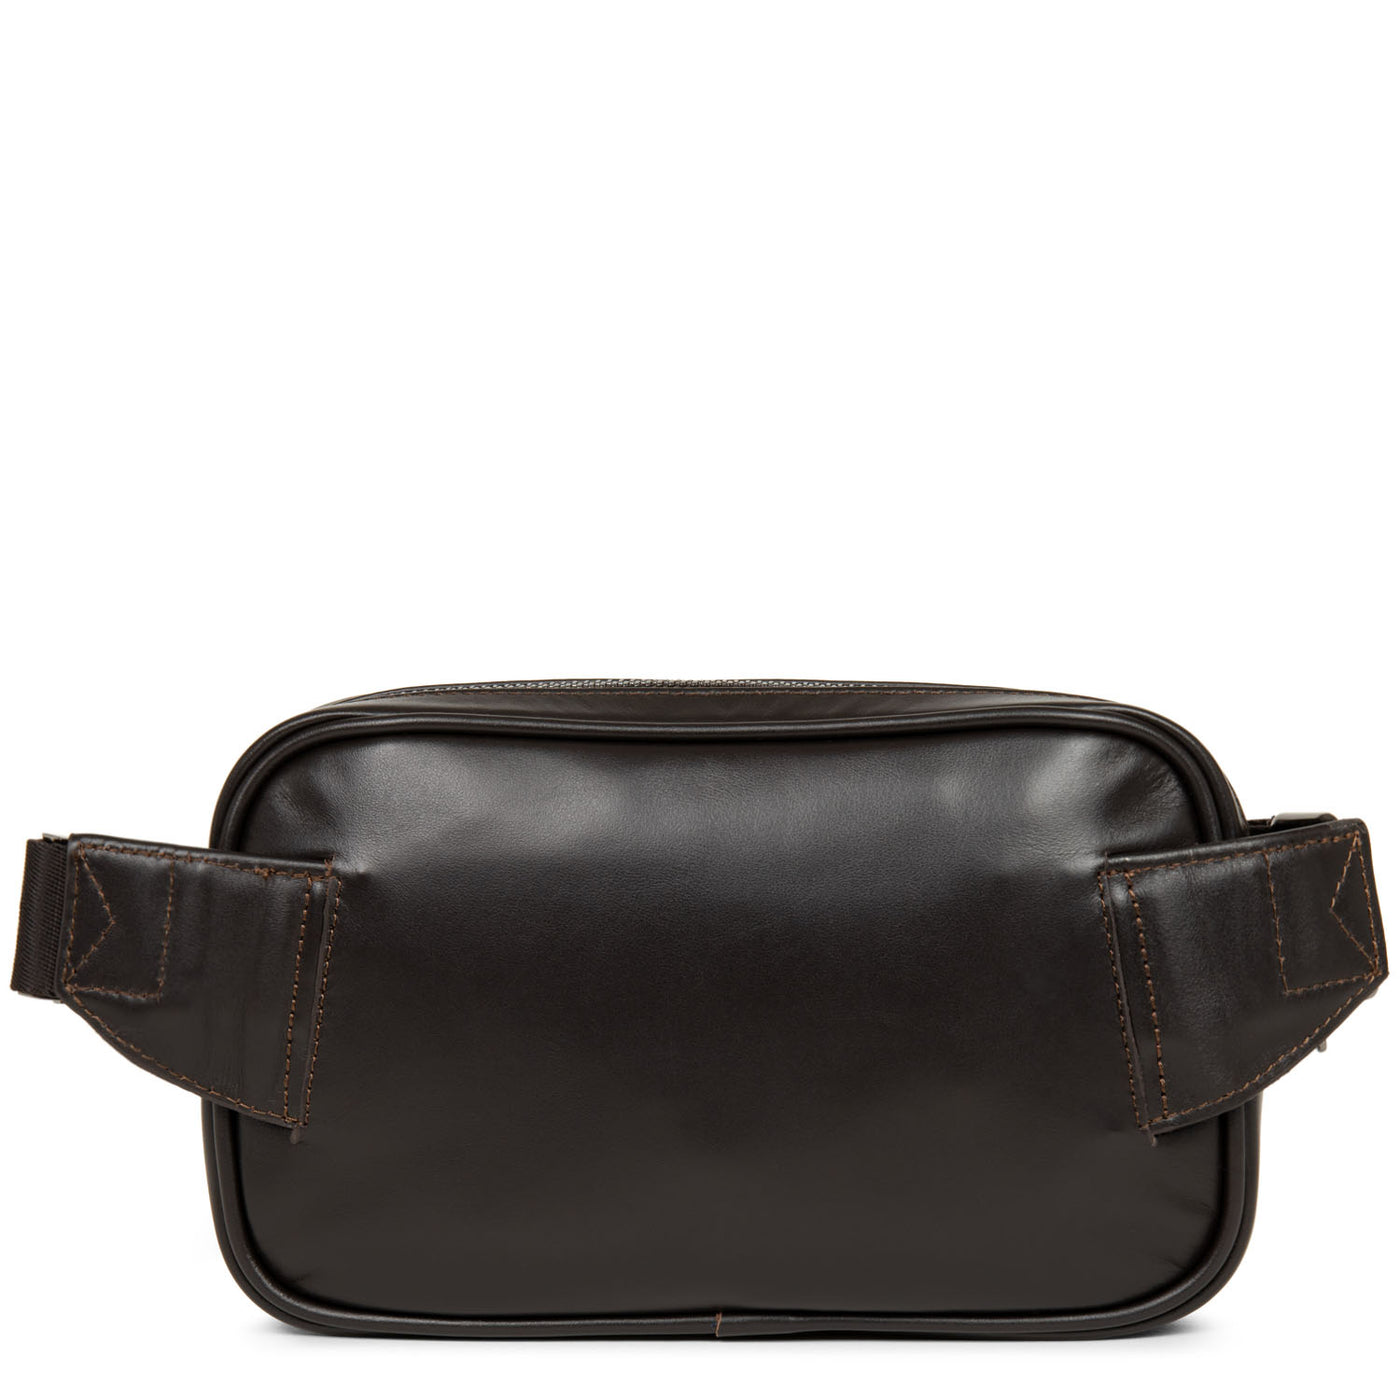 petit sac porté ceinture - capital #couleur_marron